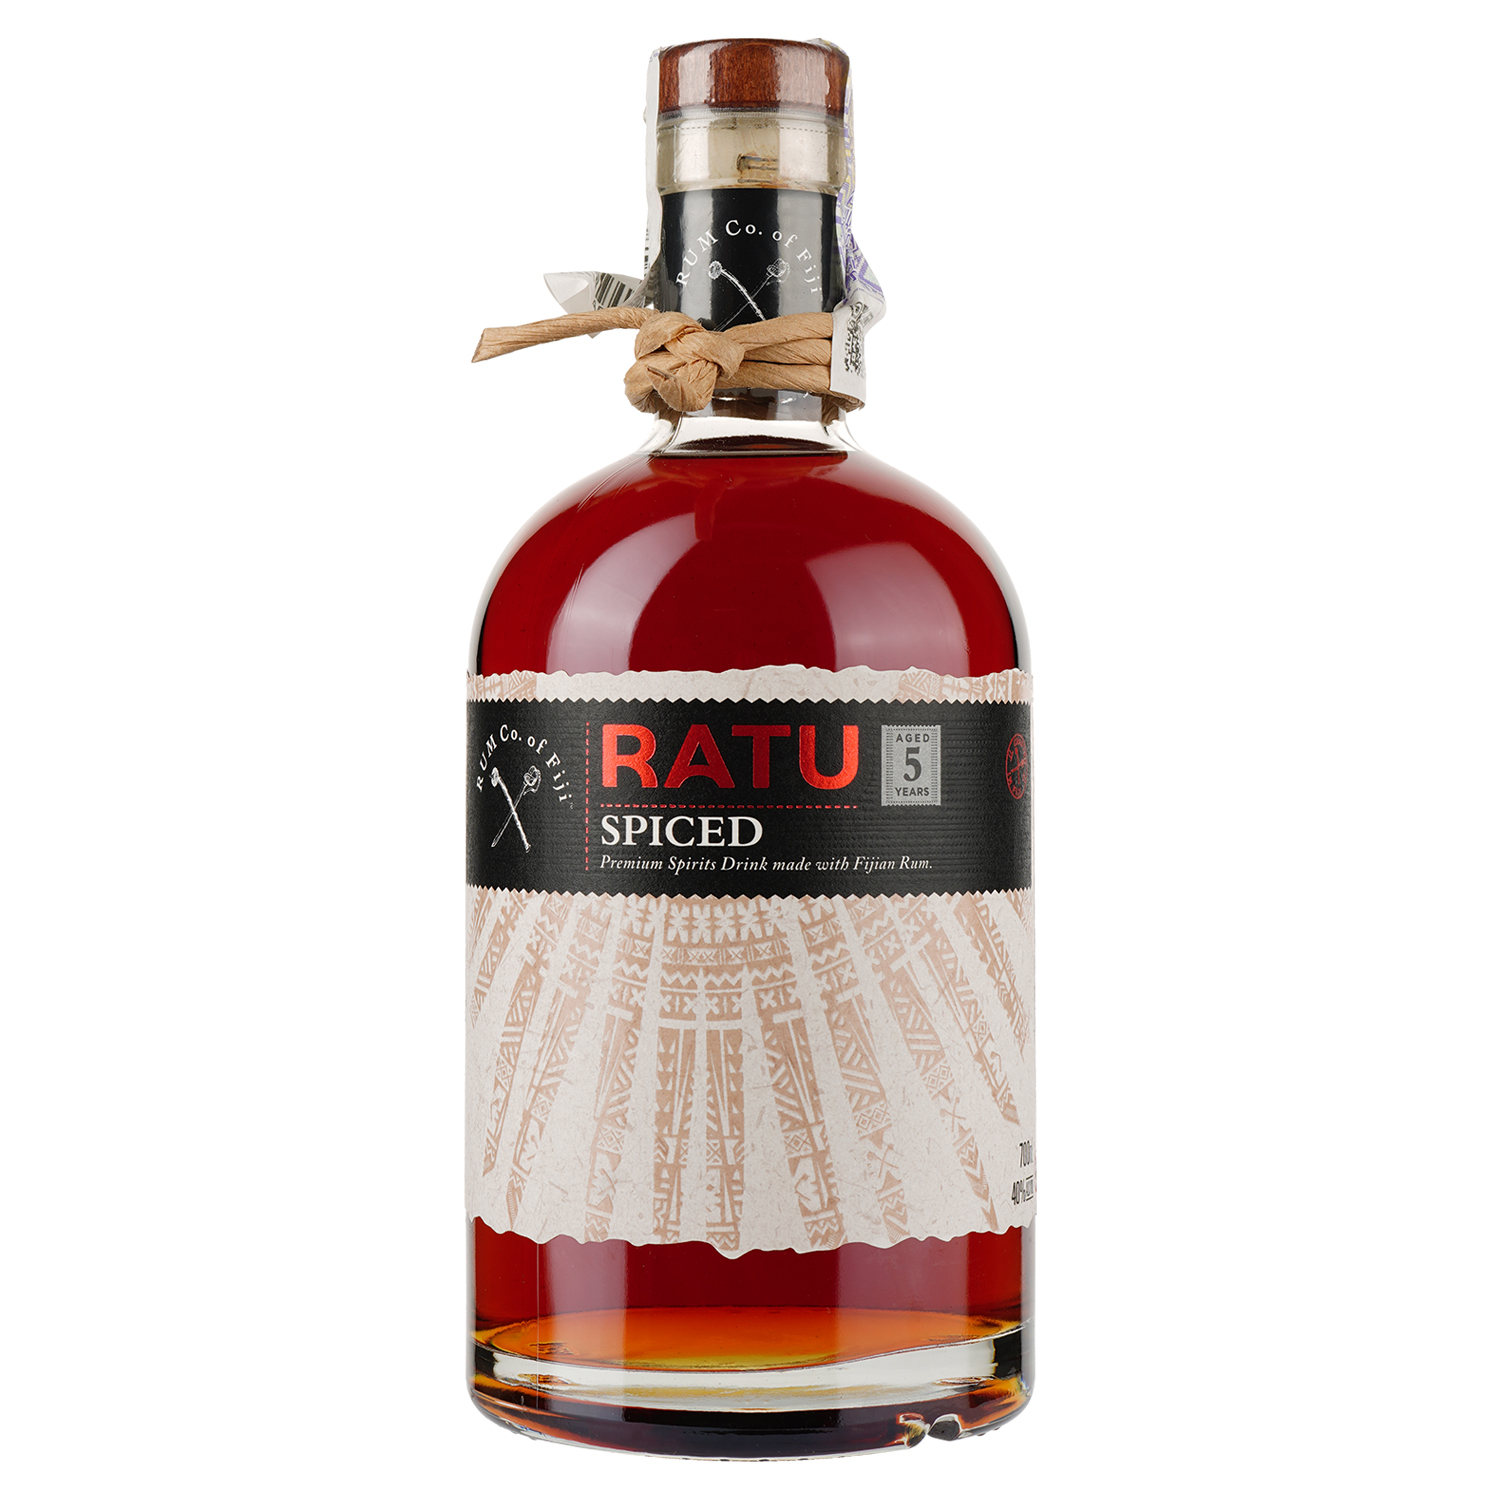 Ромовый напиток Ratu Spiced 5yo, 40%, 0,7 л - фото 1